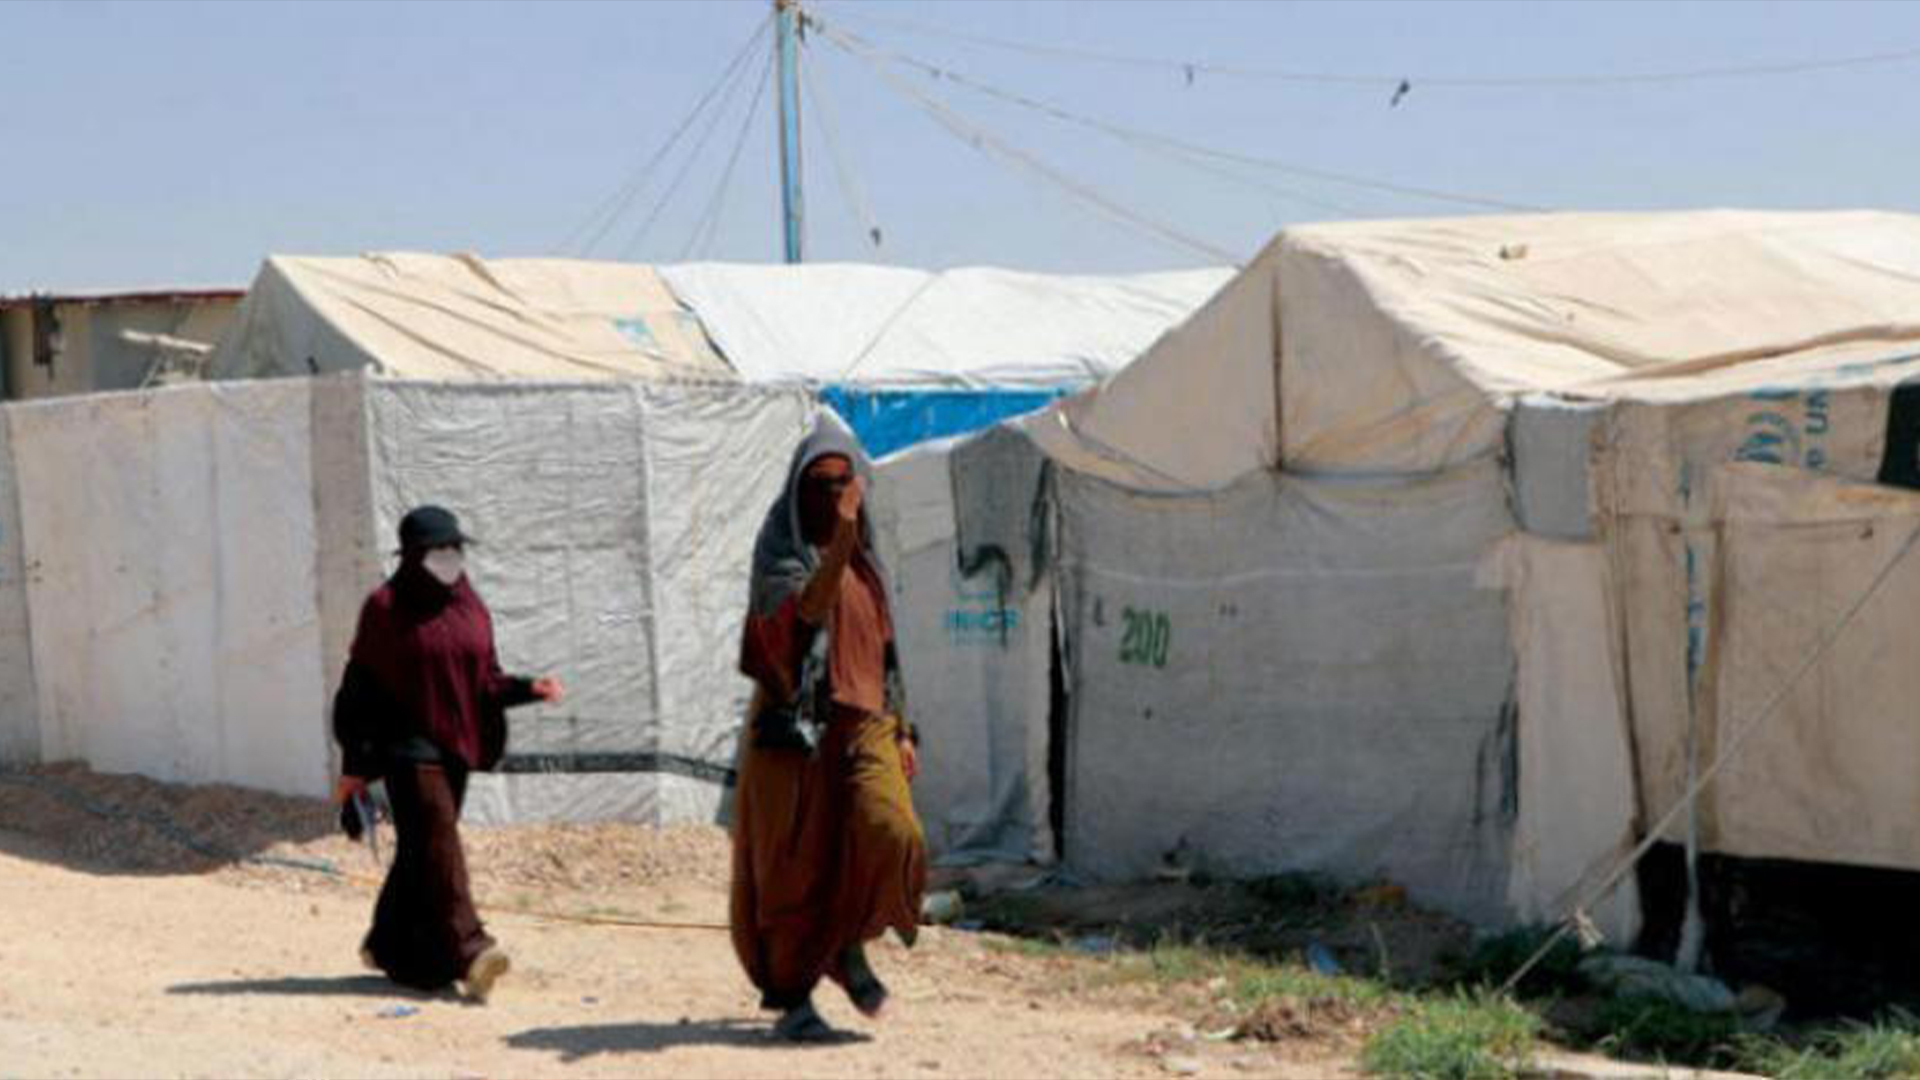  Two women in al-Roj camp in Syria (Asharq Al-Awsat)